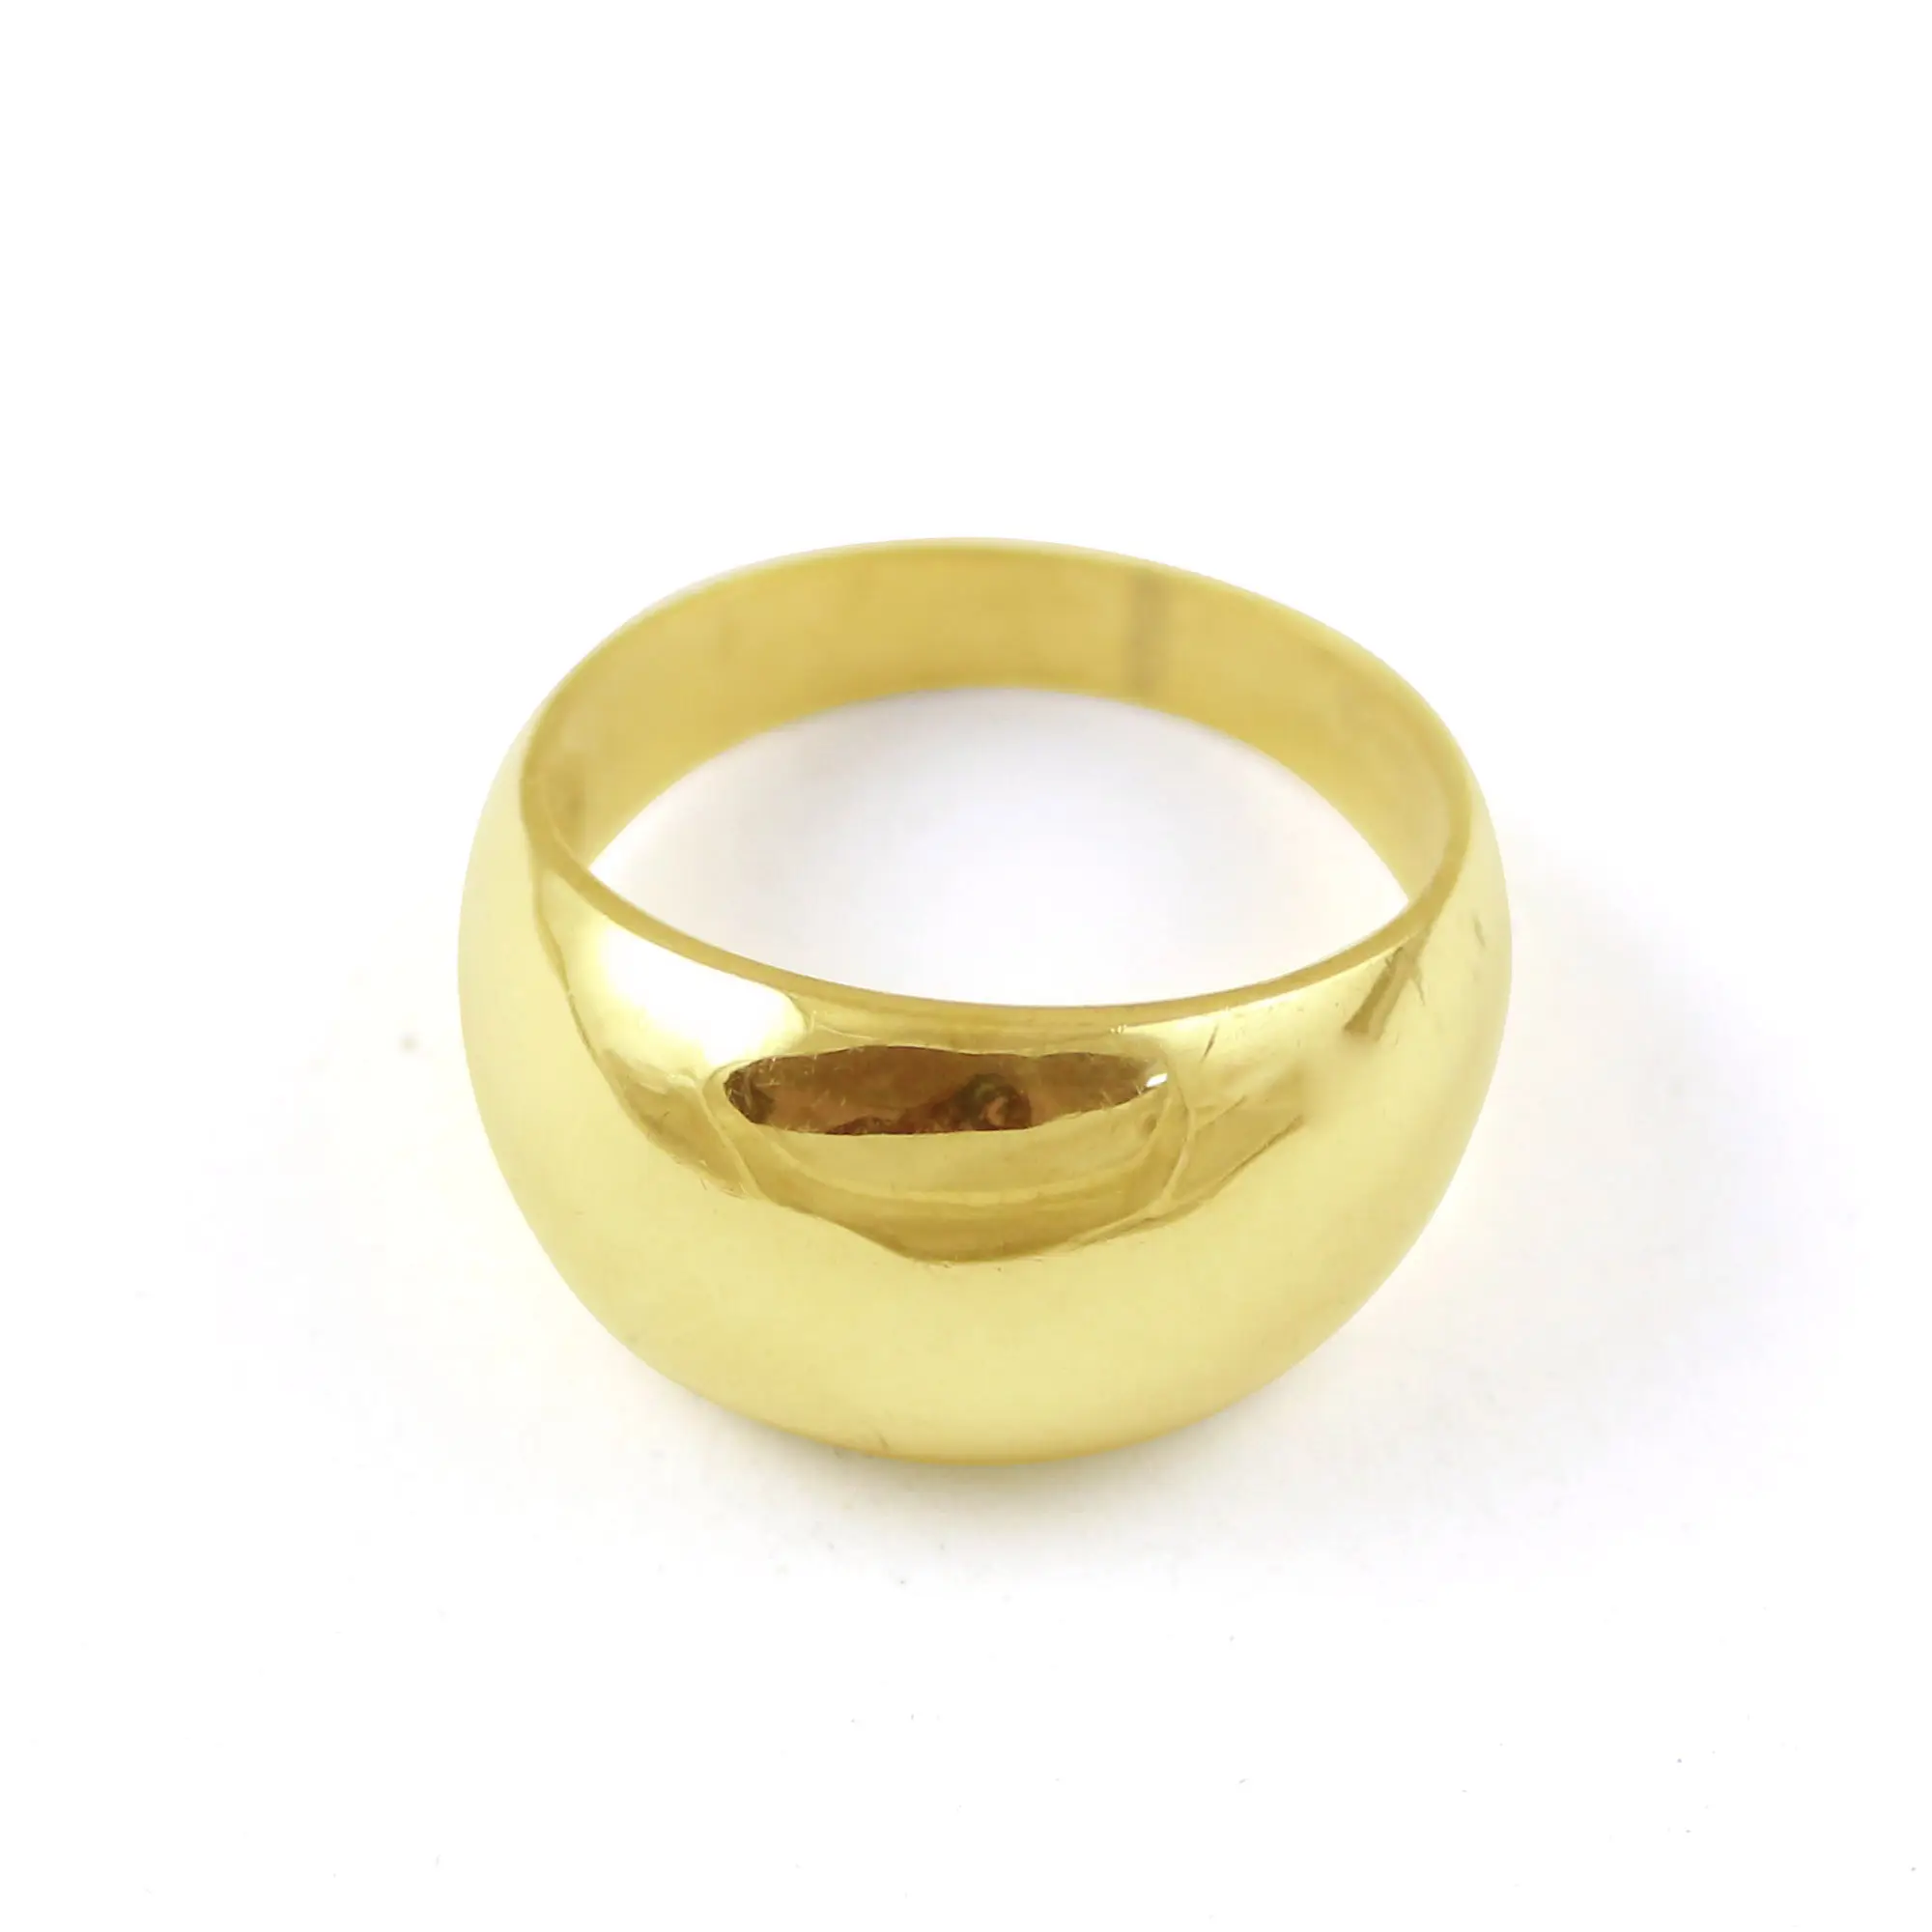 Groothandel Goth Retro Antieke Mode Duim Brons/Messing/Goud Gelegeerd Metalen Ringen Sieraden